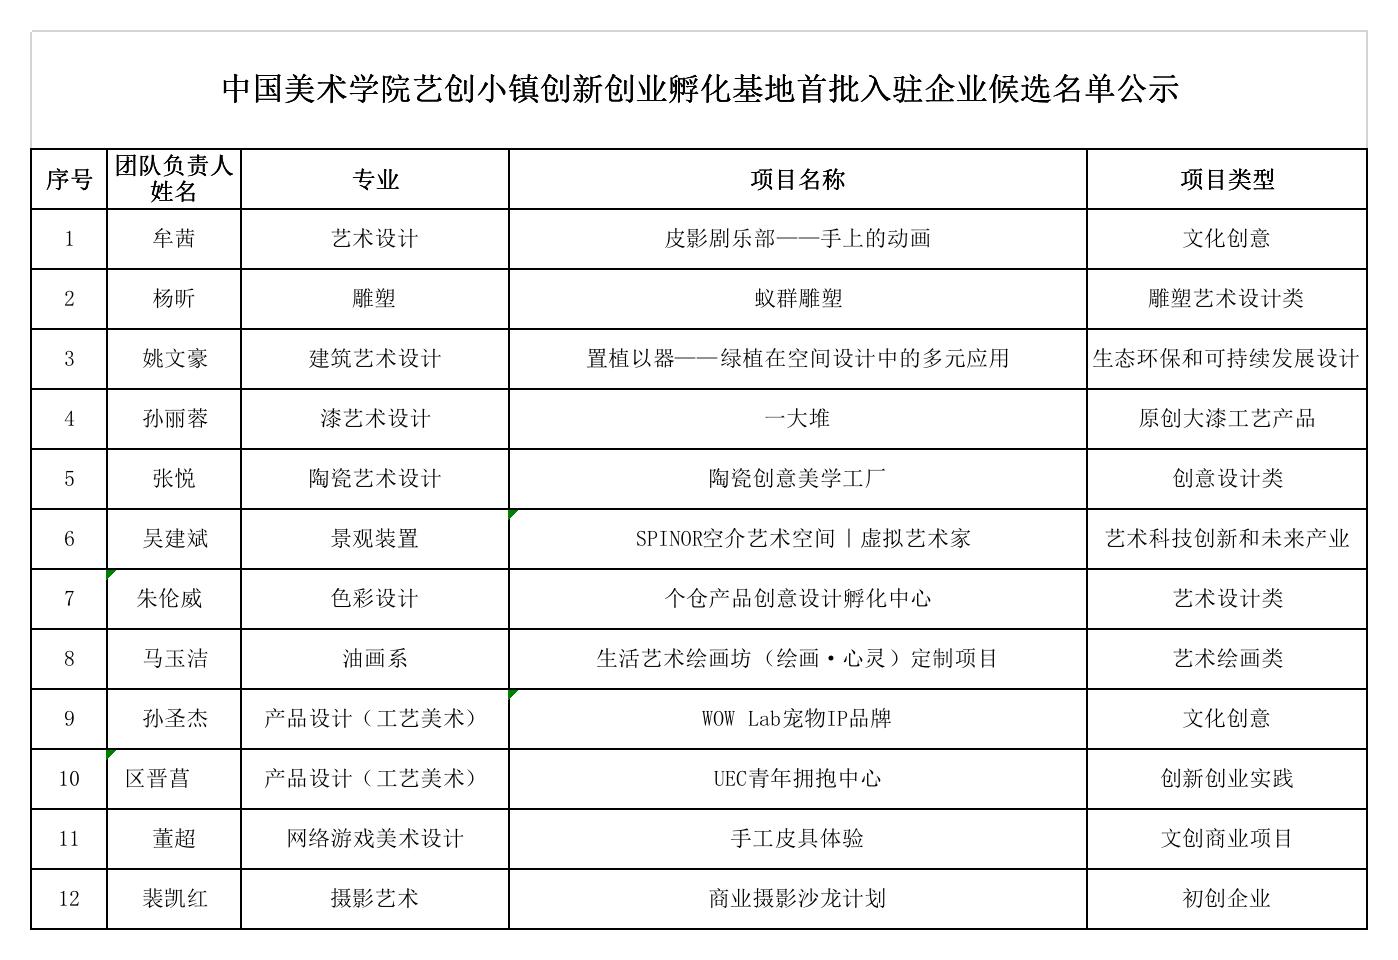 中国美术学院艺创小镇创新创业孵化基地首批入驻企业候选名单公示.jpg